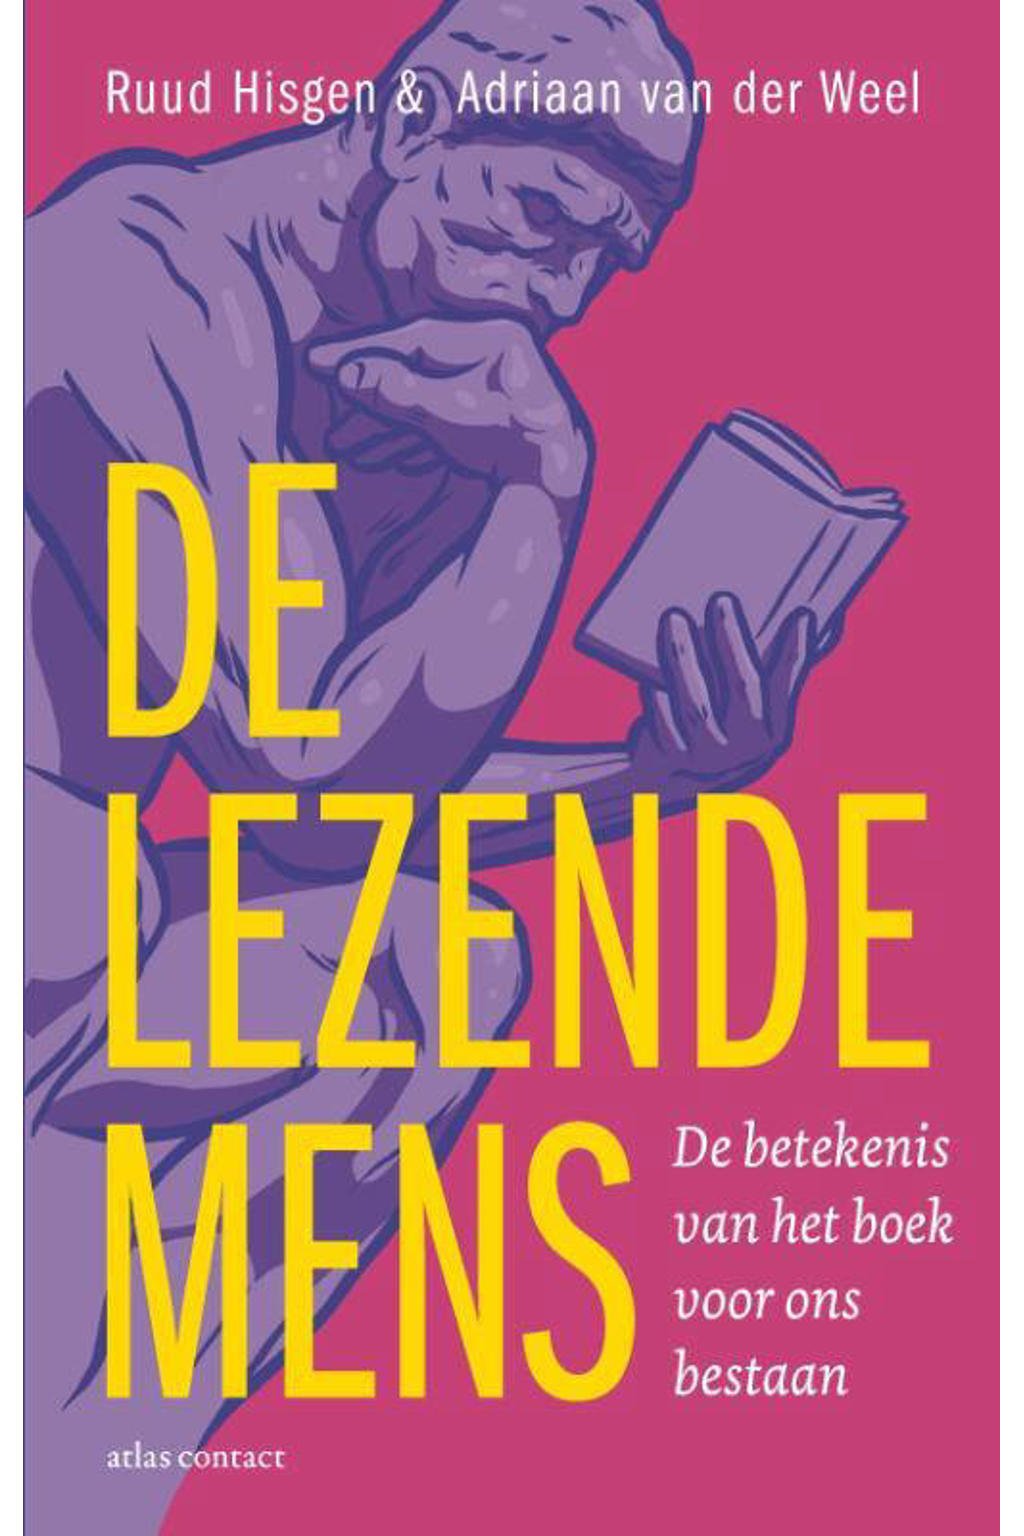 De lezende mens - Ruud Hisgen en Adriaan van der Weel